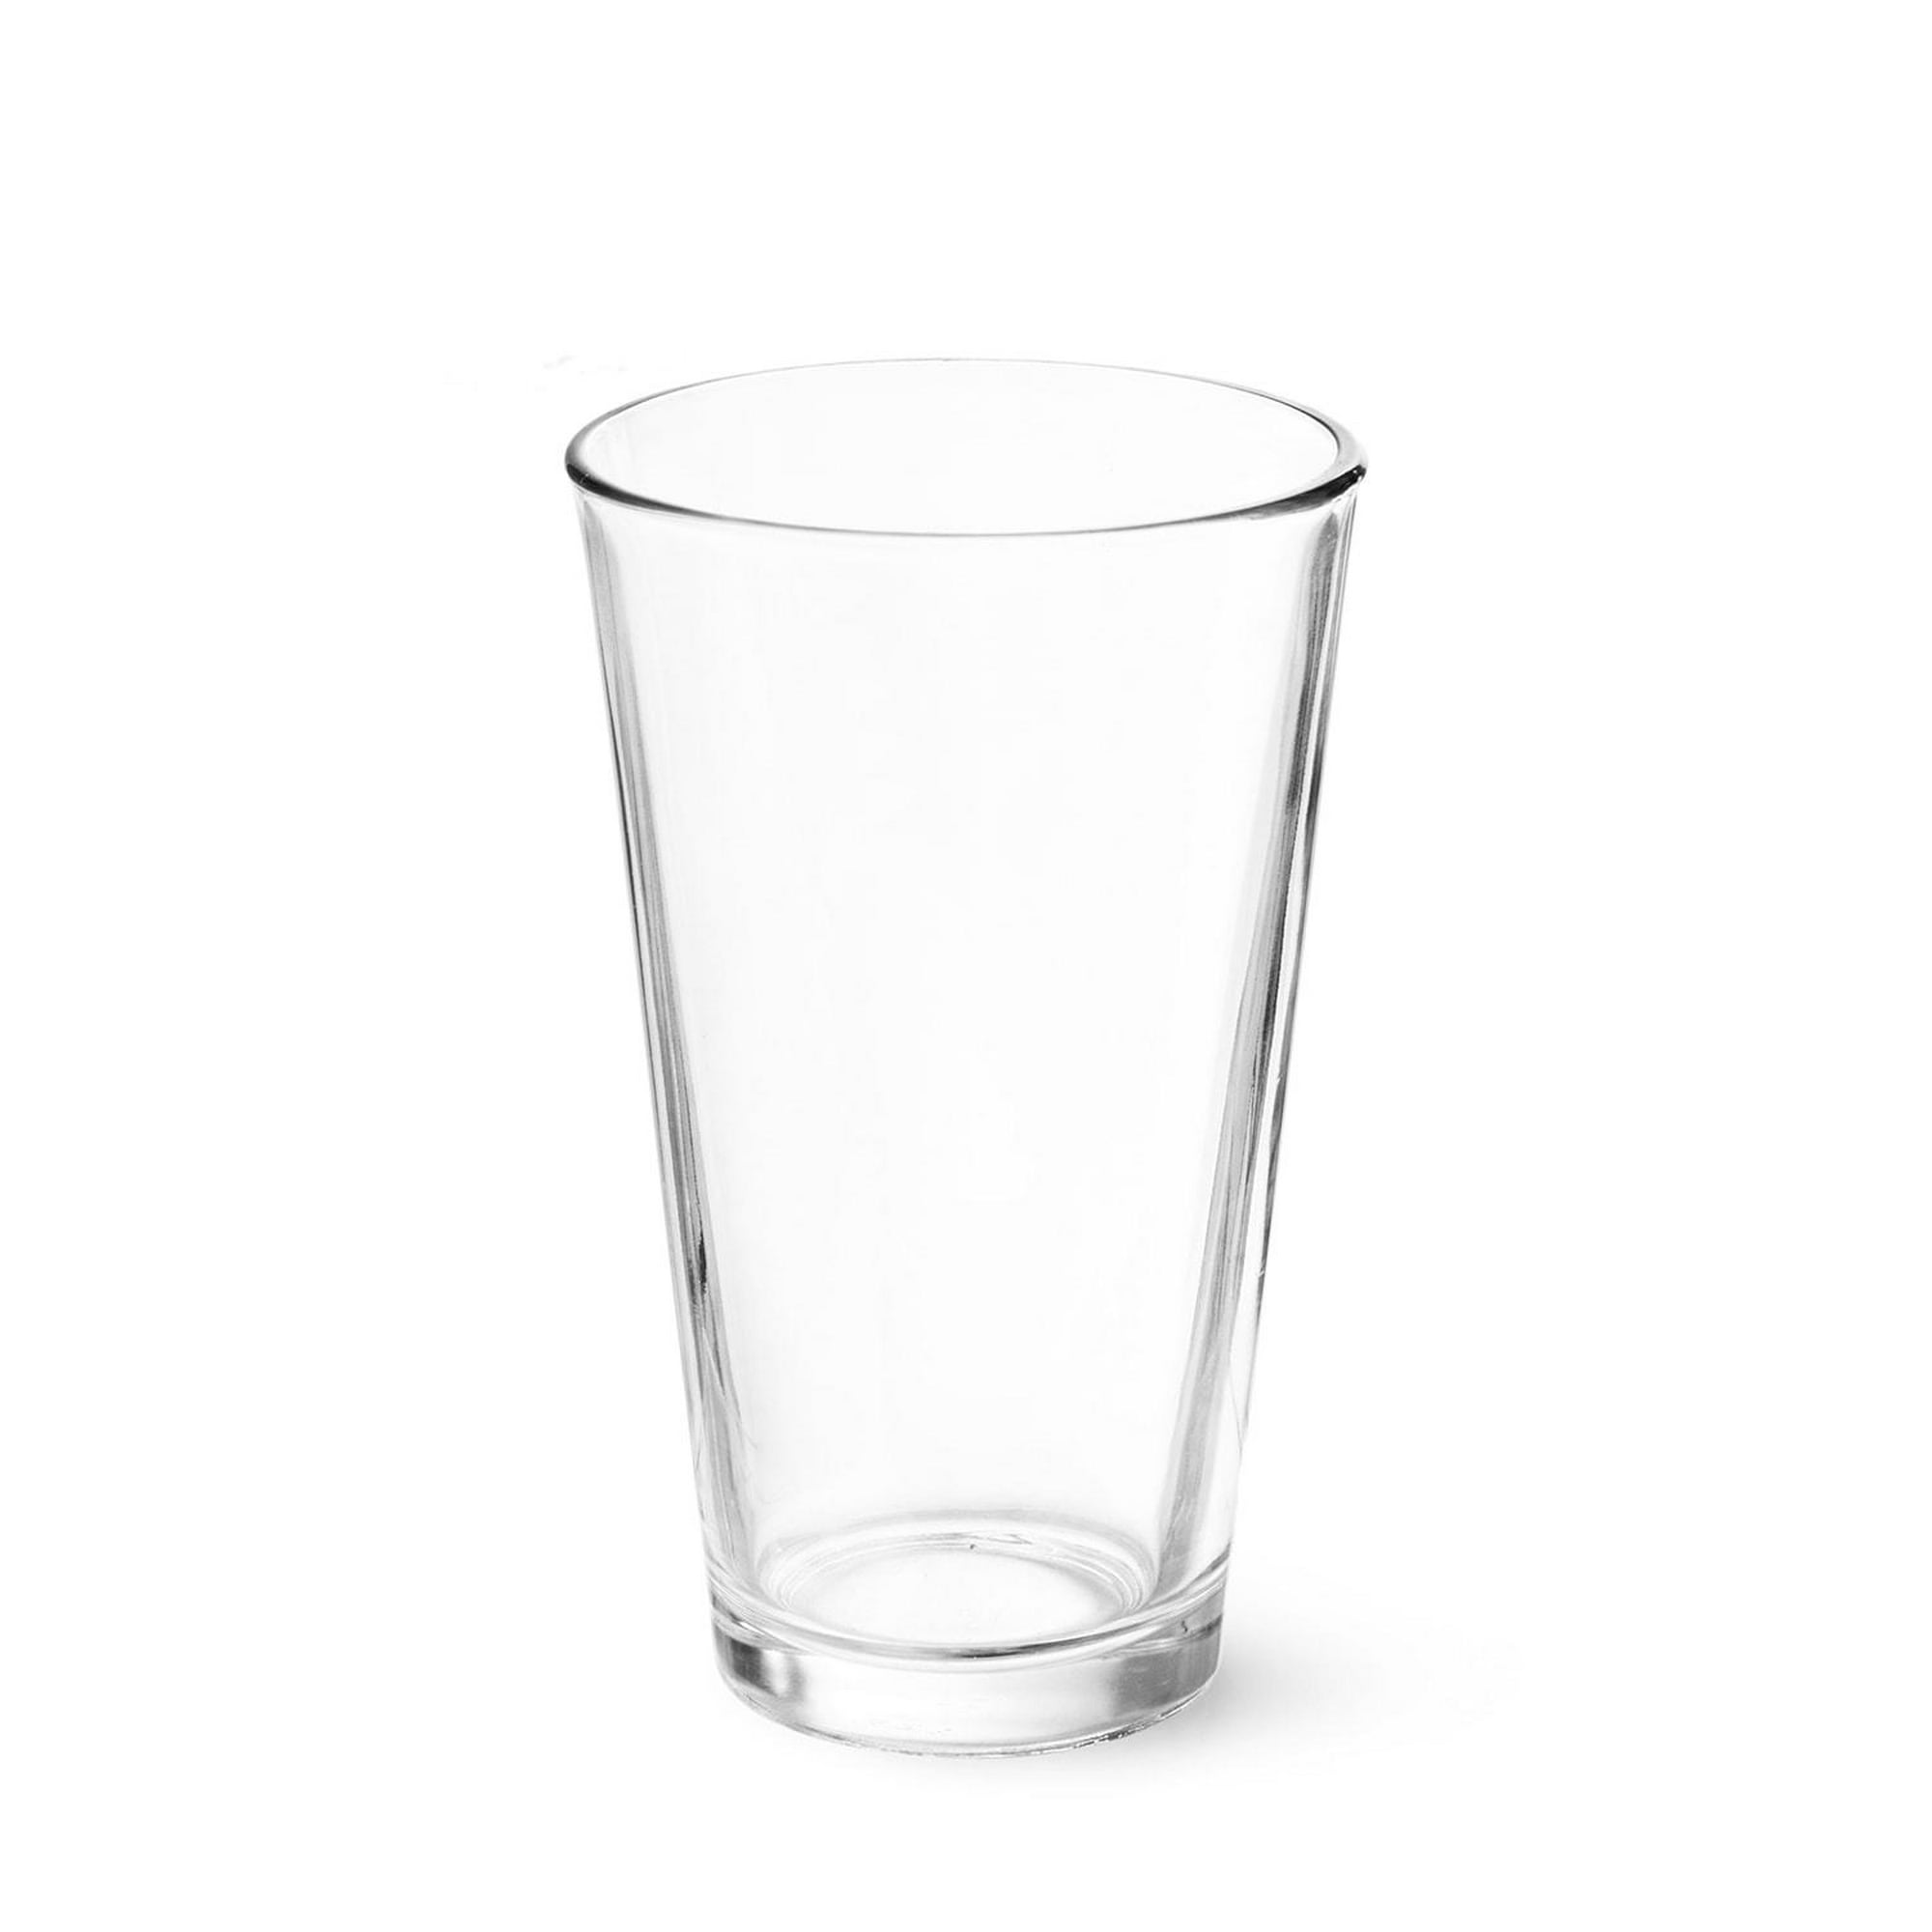 ColoVie Highball - Juego de 4 vasos de cristal acanalados, vasos de vidrio  de colores, vasos mezclad…Ver más ColoVie Highball - Juego de 4 vasos de